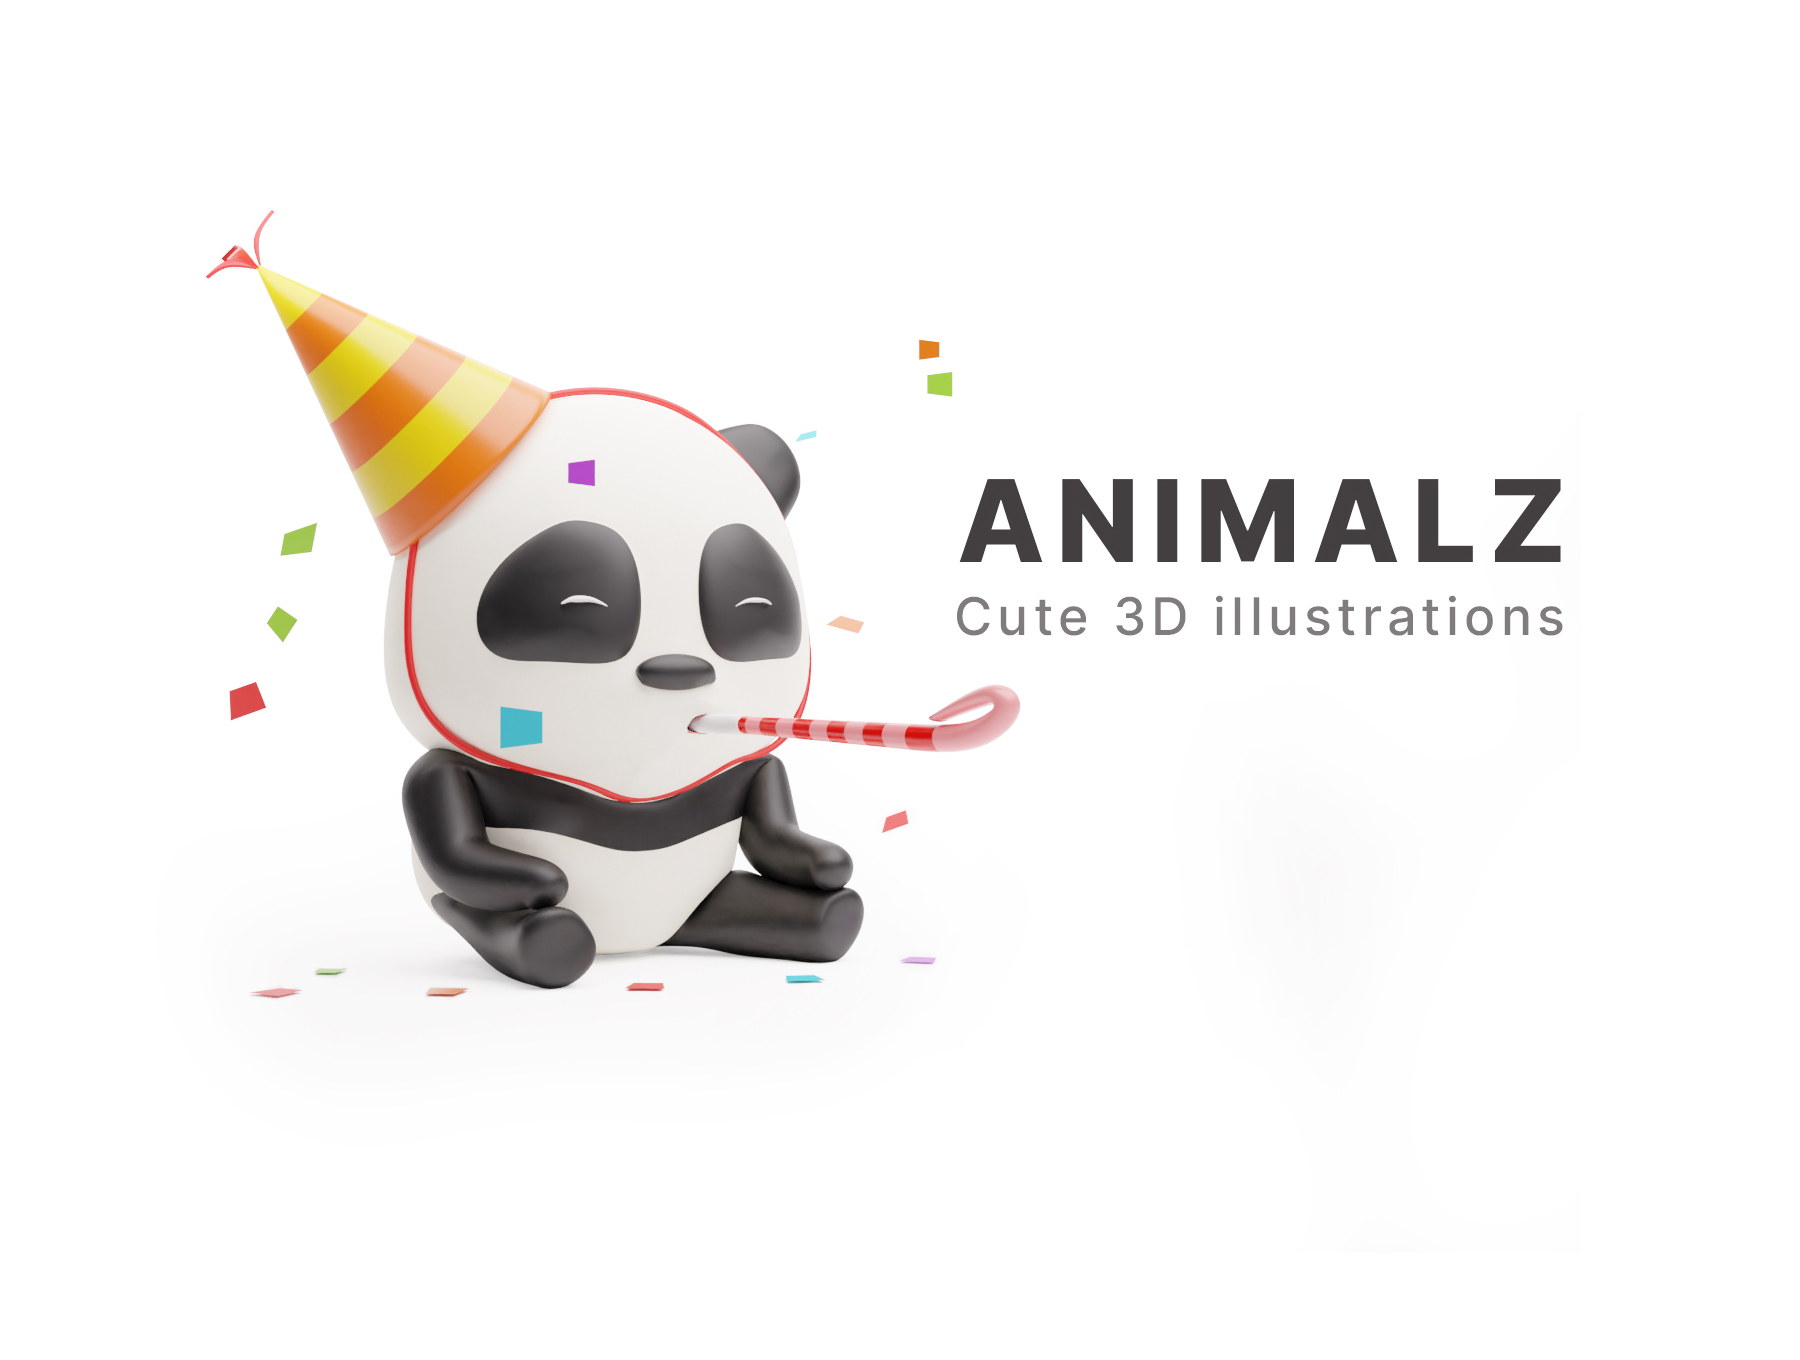 三维渲染5种3D卡通呆萌动物原型插画 ANIMALZ - c